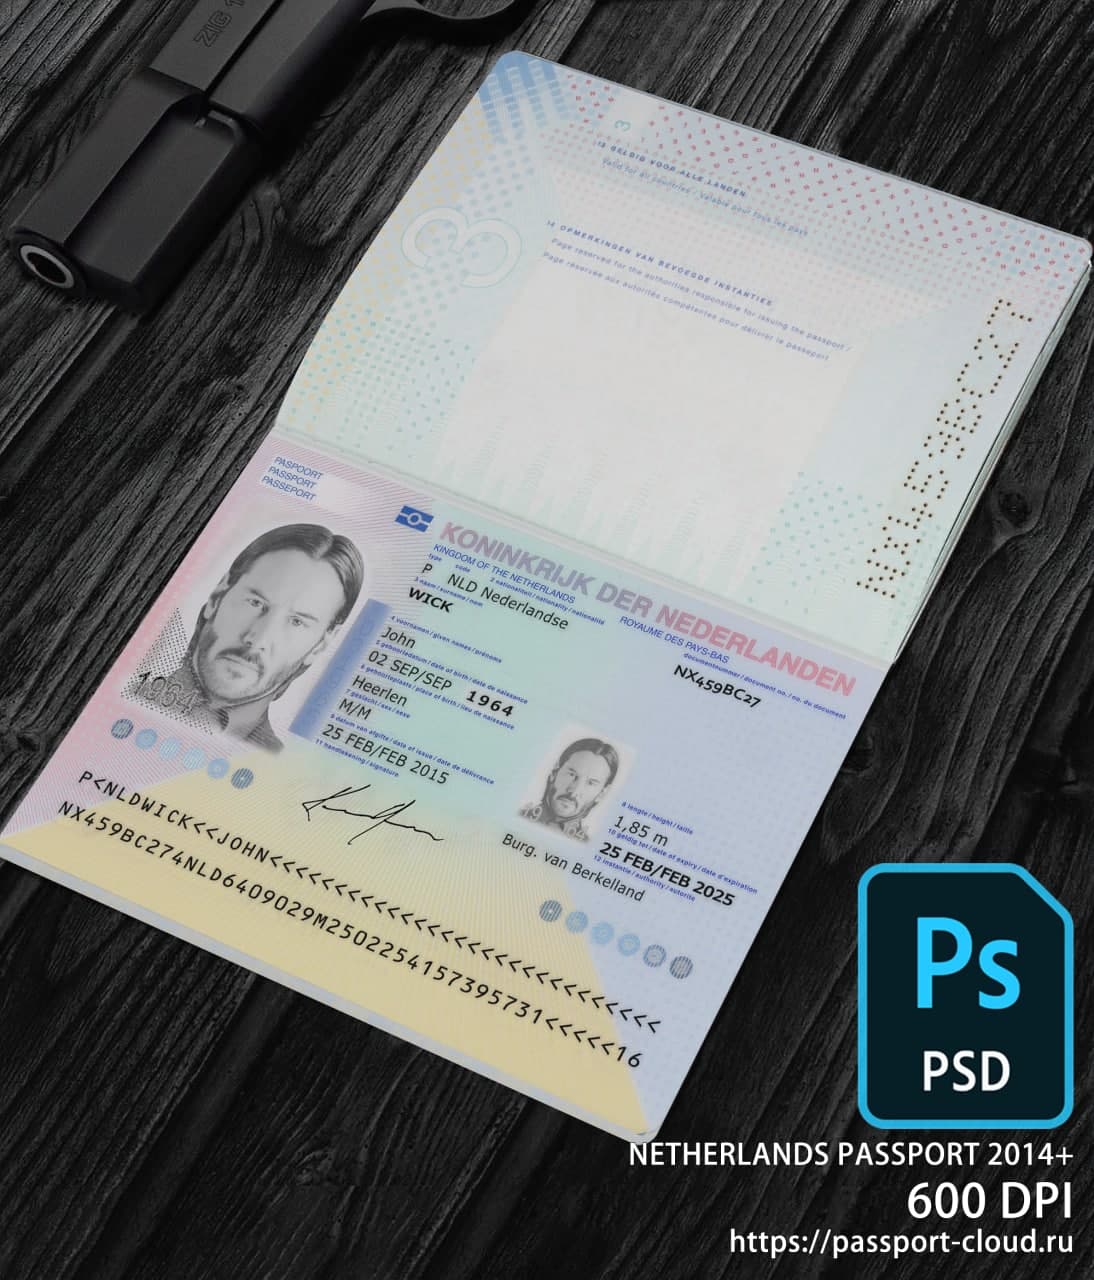 Netherlands Passport 2014+ PSD1